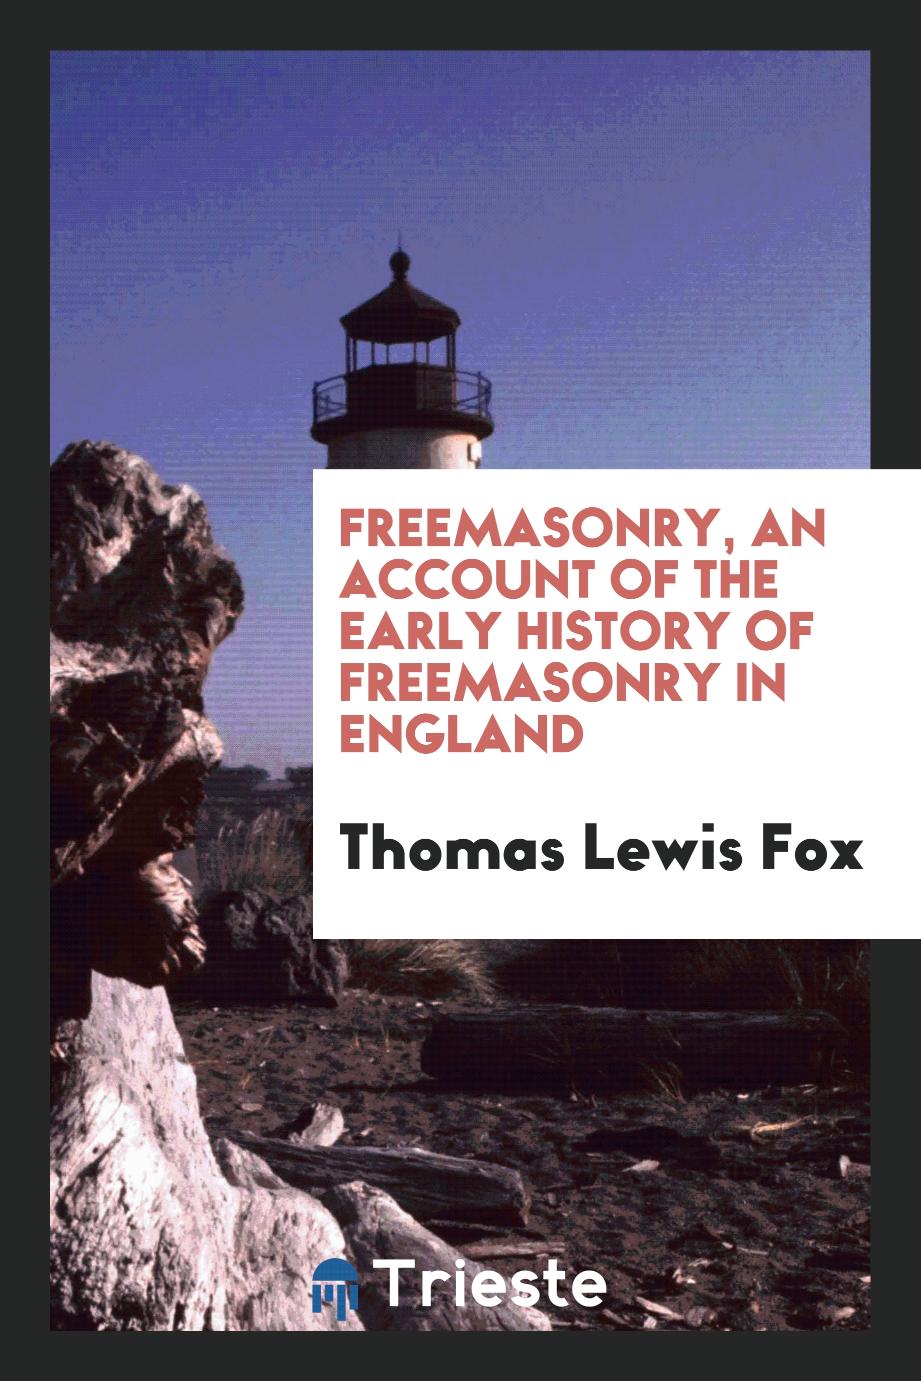 Freemasonry, an account of the early history of freemasonry in England